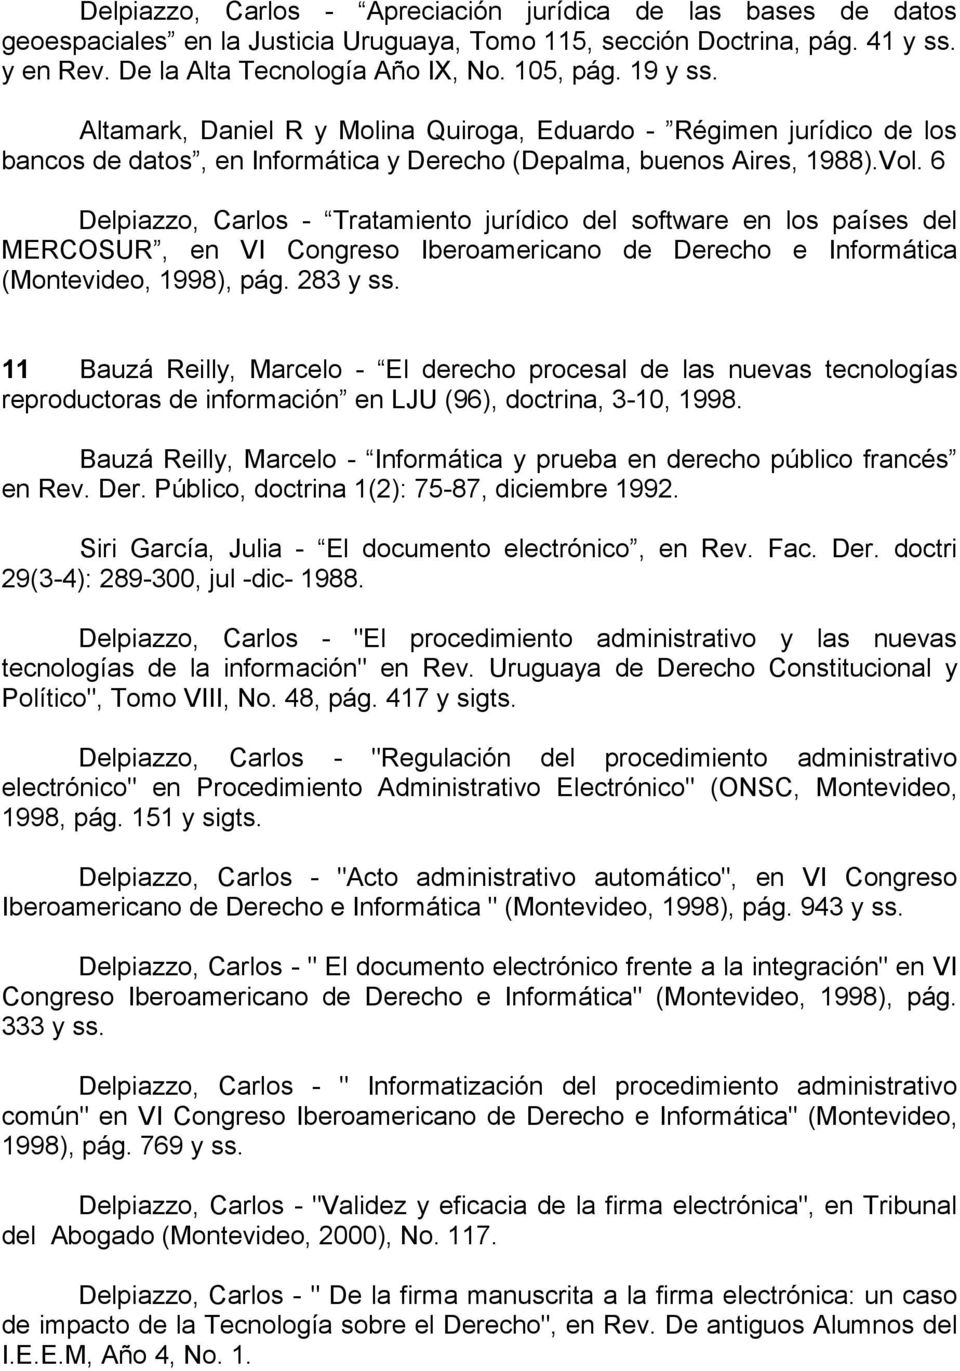 6 Delpiazzo, Carlos - Tratamiento jurídico del software en los países del MERCOSUR, en VI Congreso Iberoamericano de Derecho e Informática (Montevideo, 1998), pág. 283 y ss.